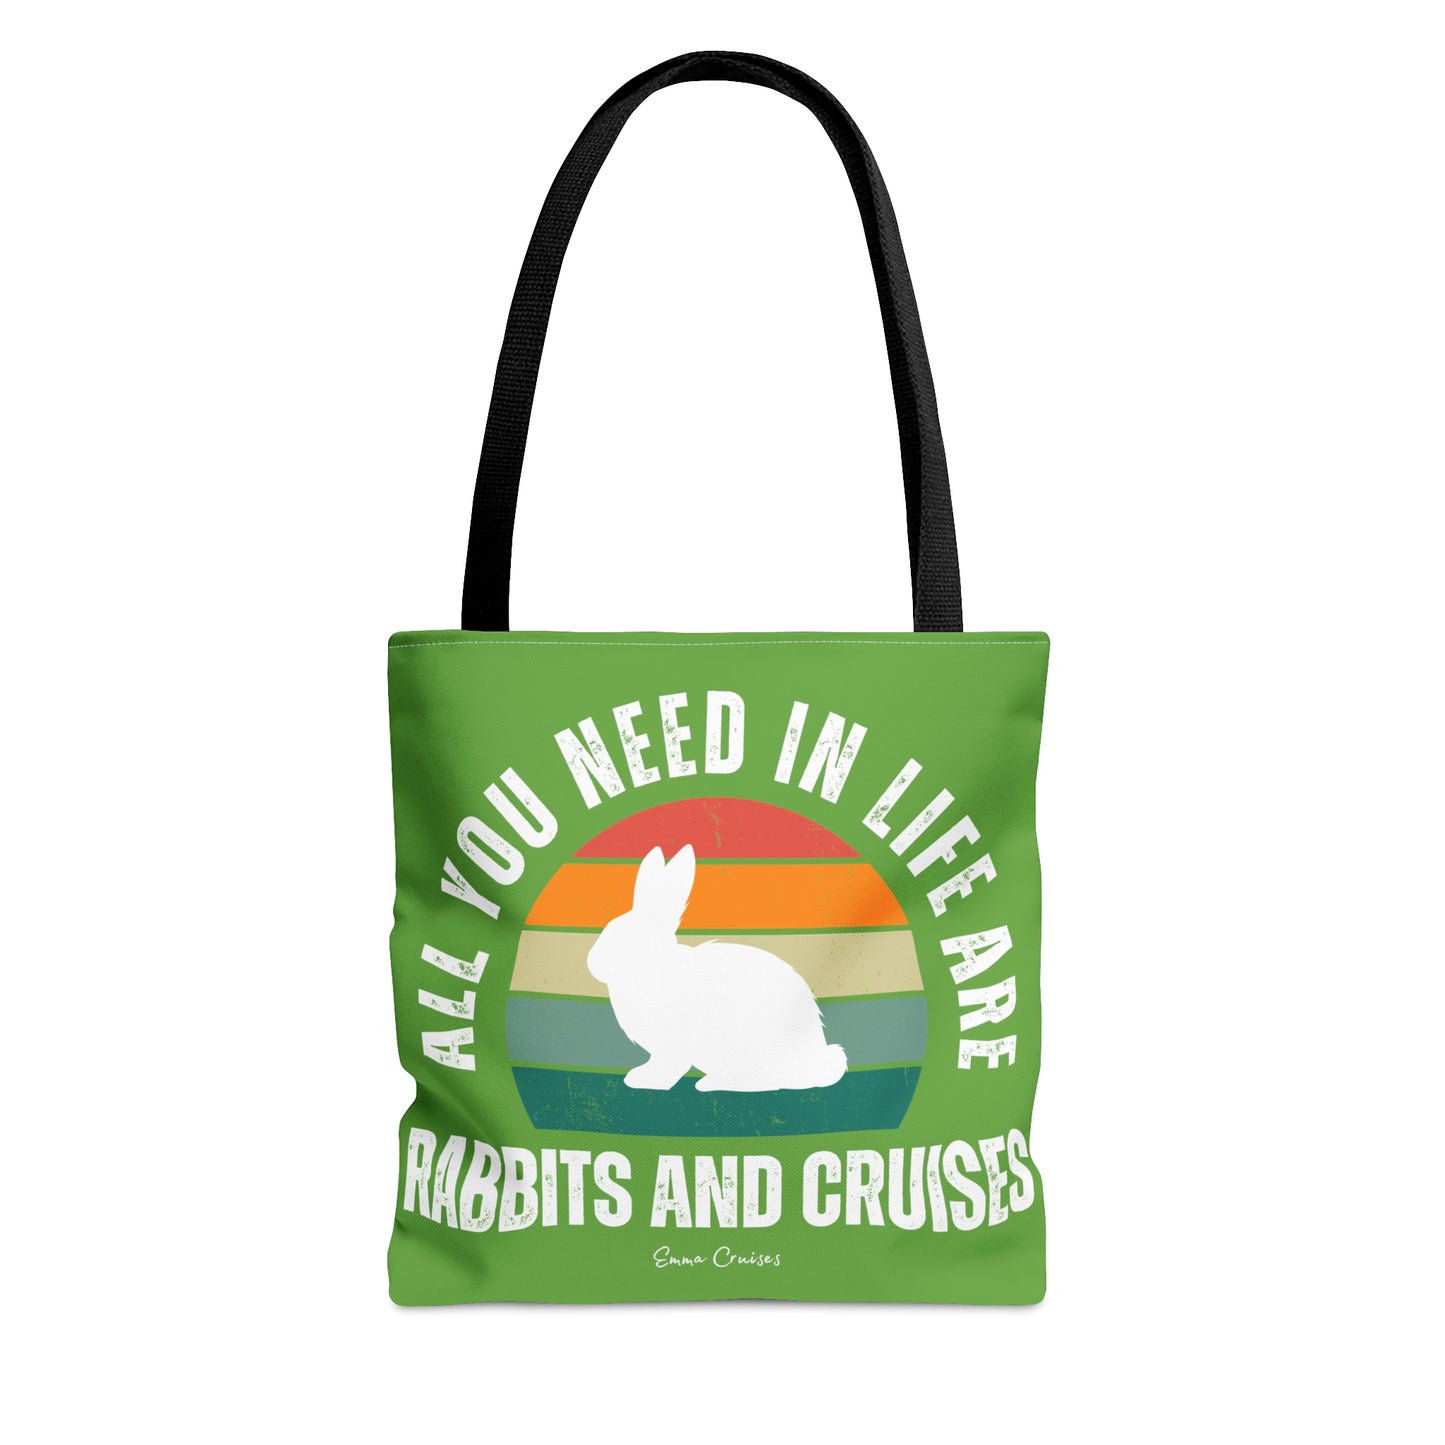 Rabbits and Cruises - Bag